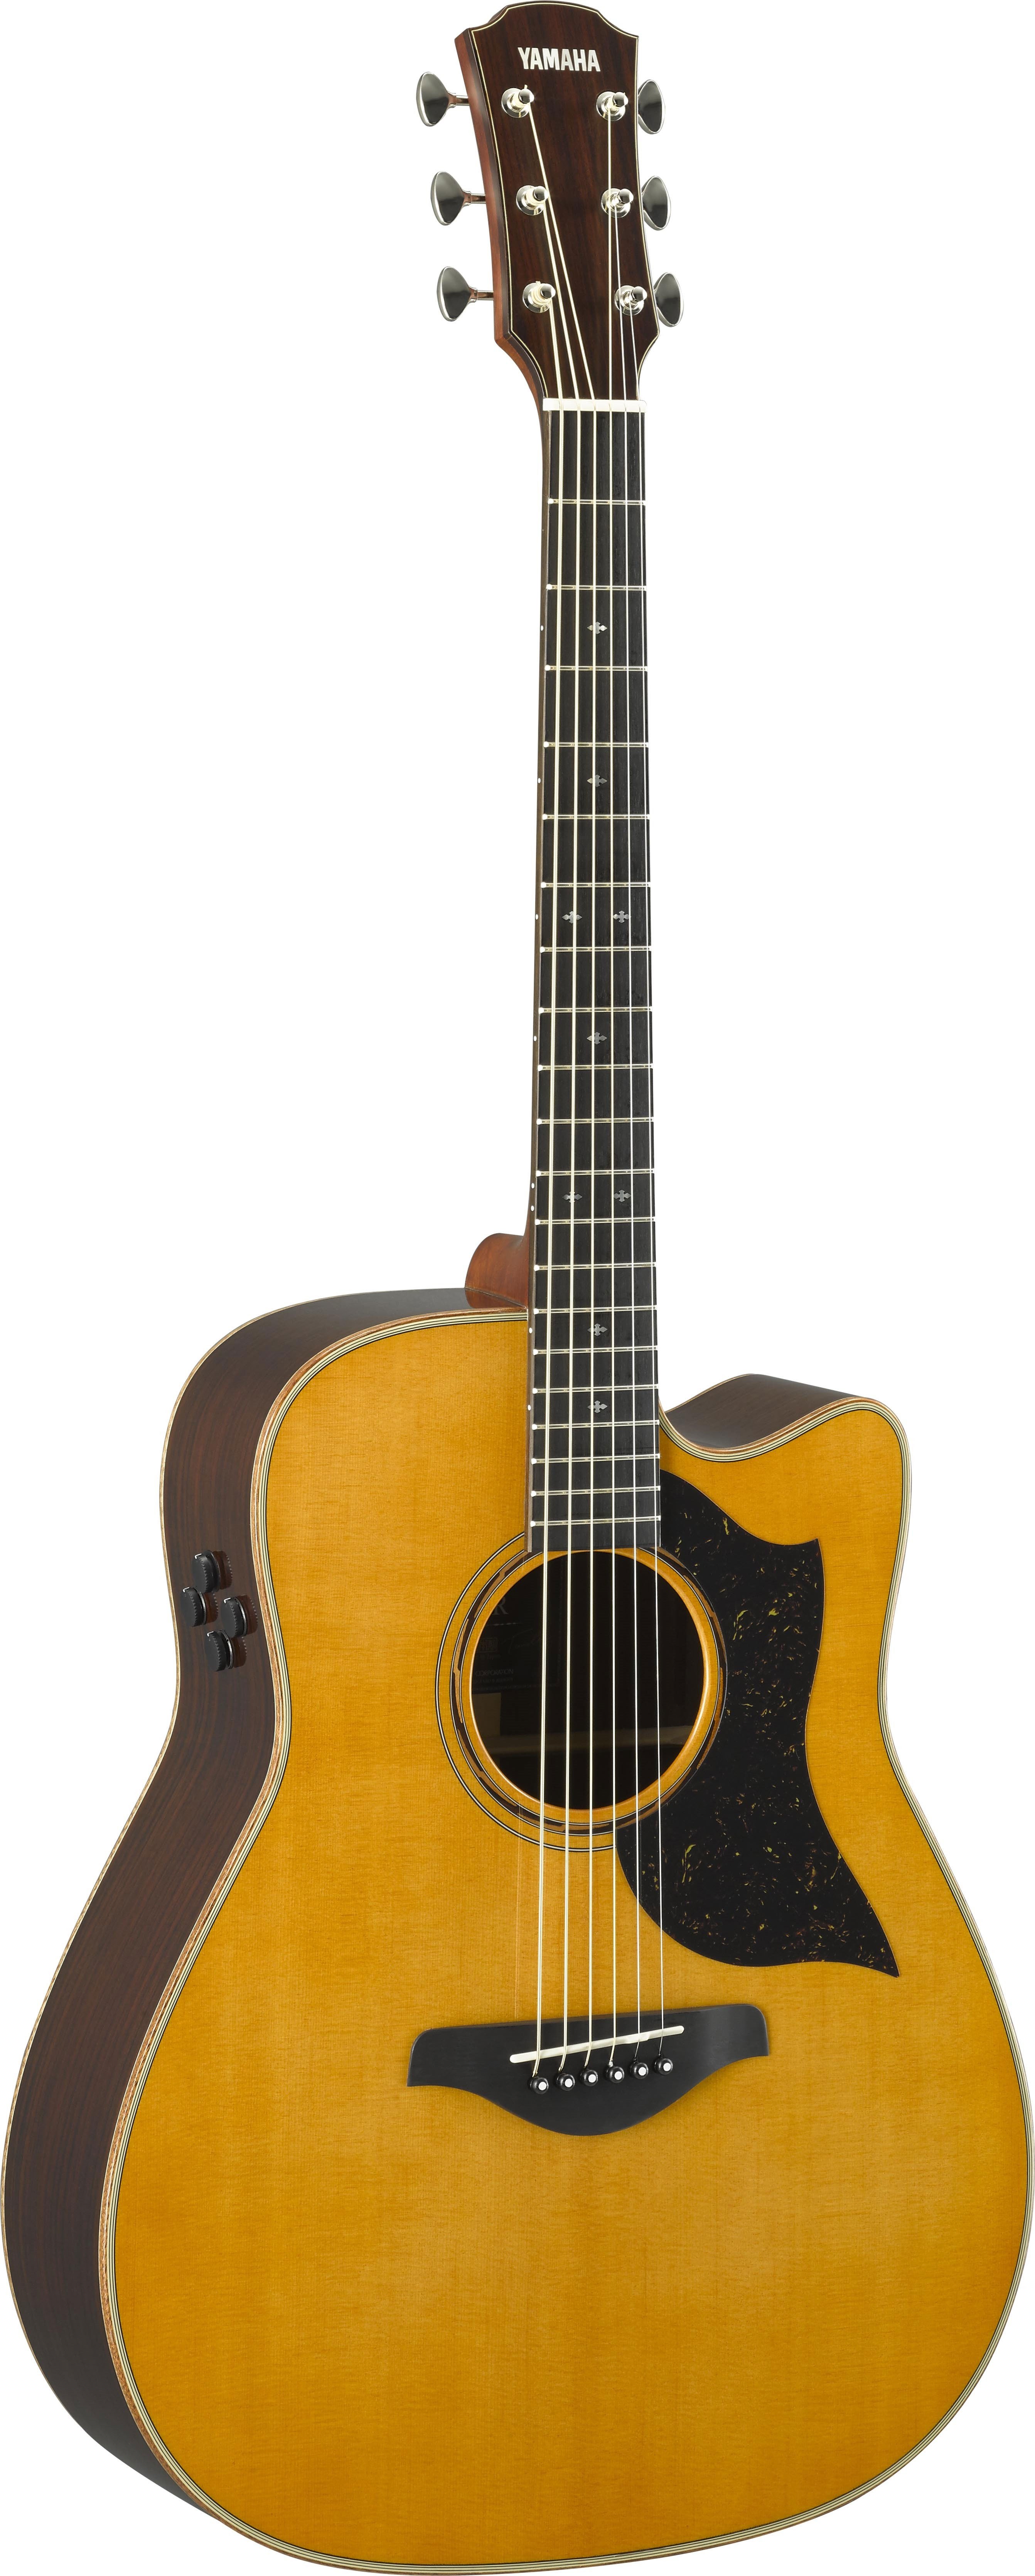 Yamaha A5R ARE Western gitar